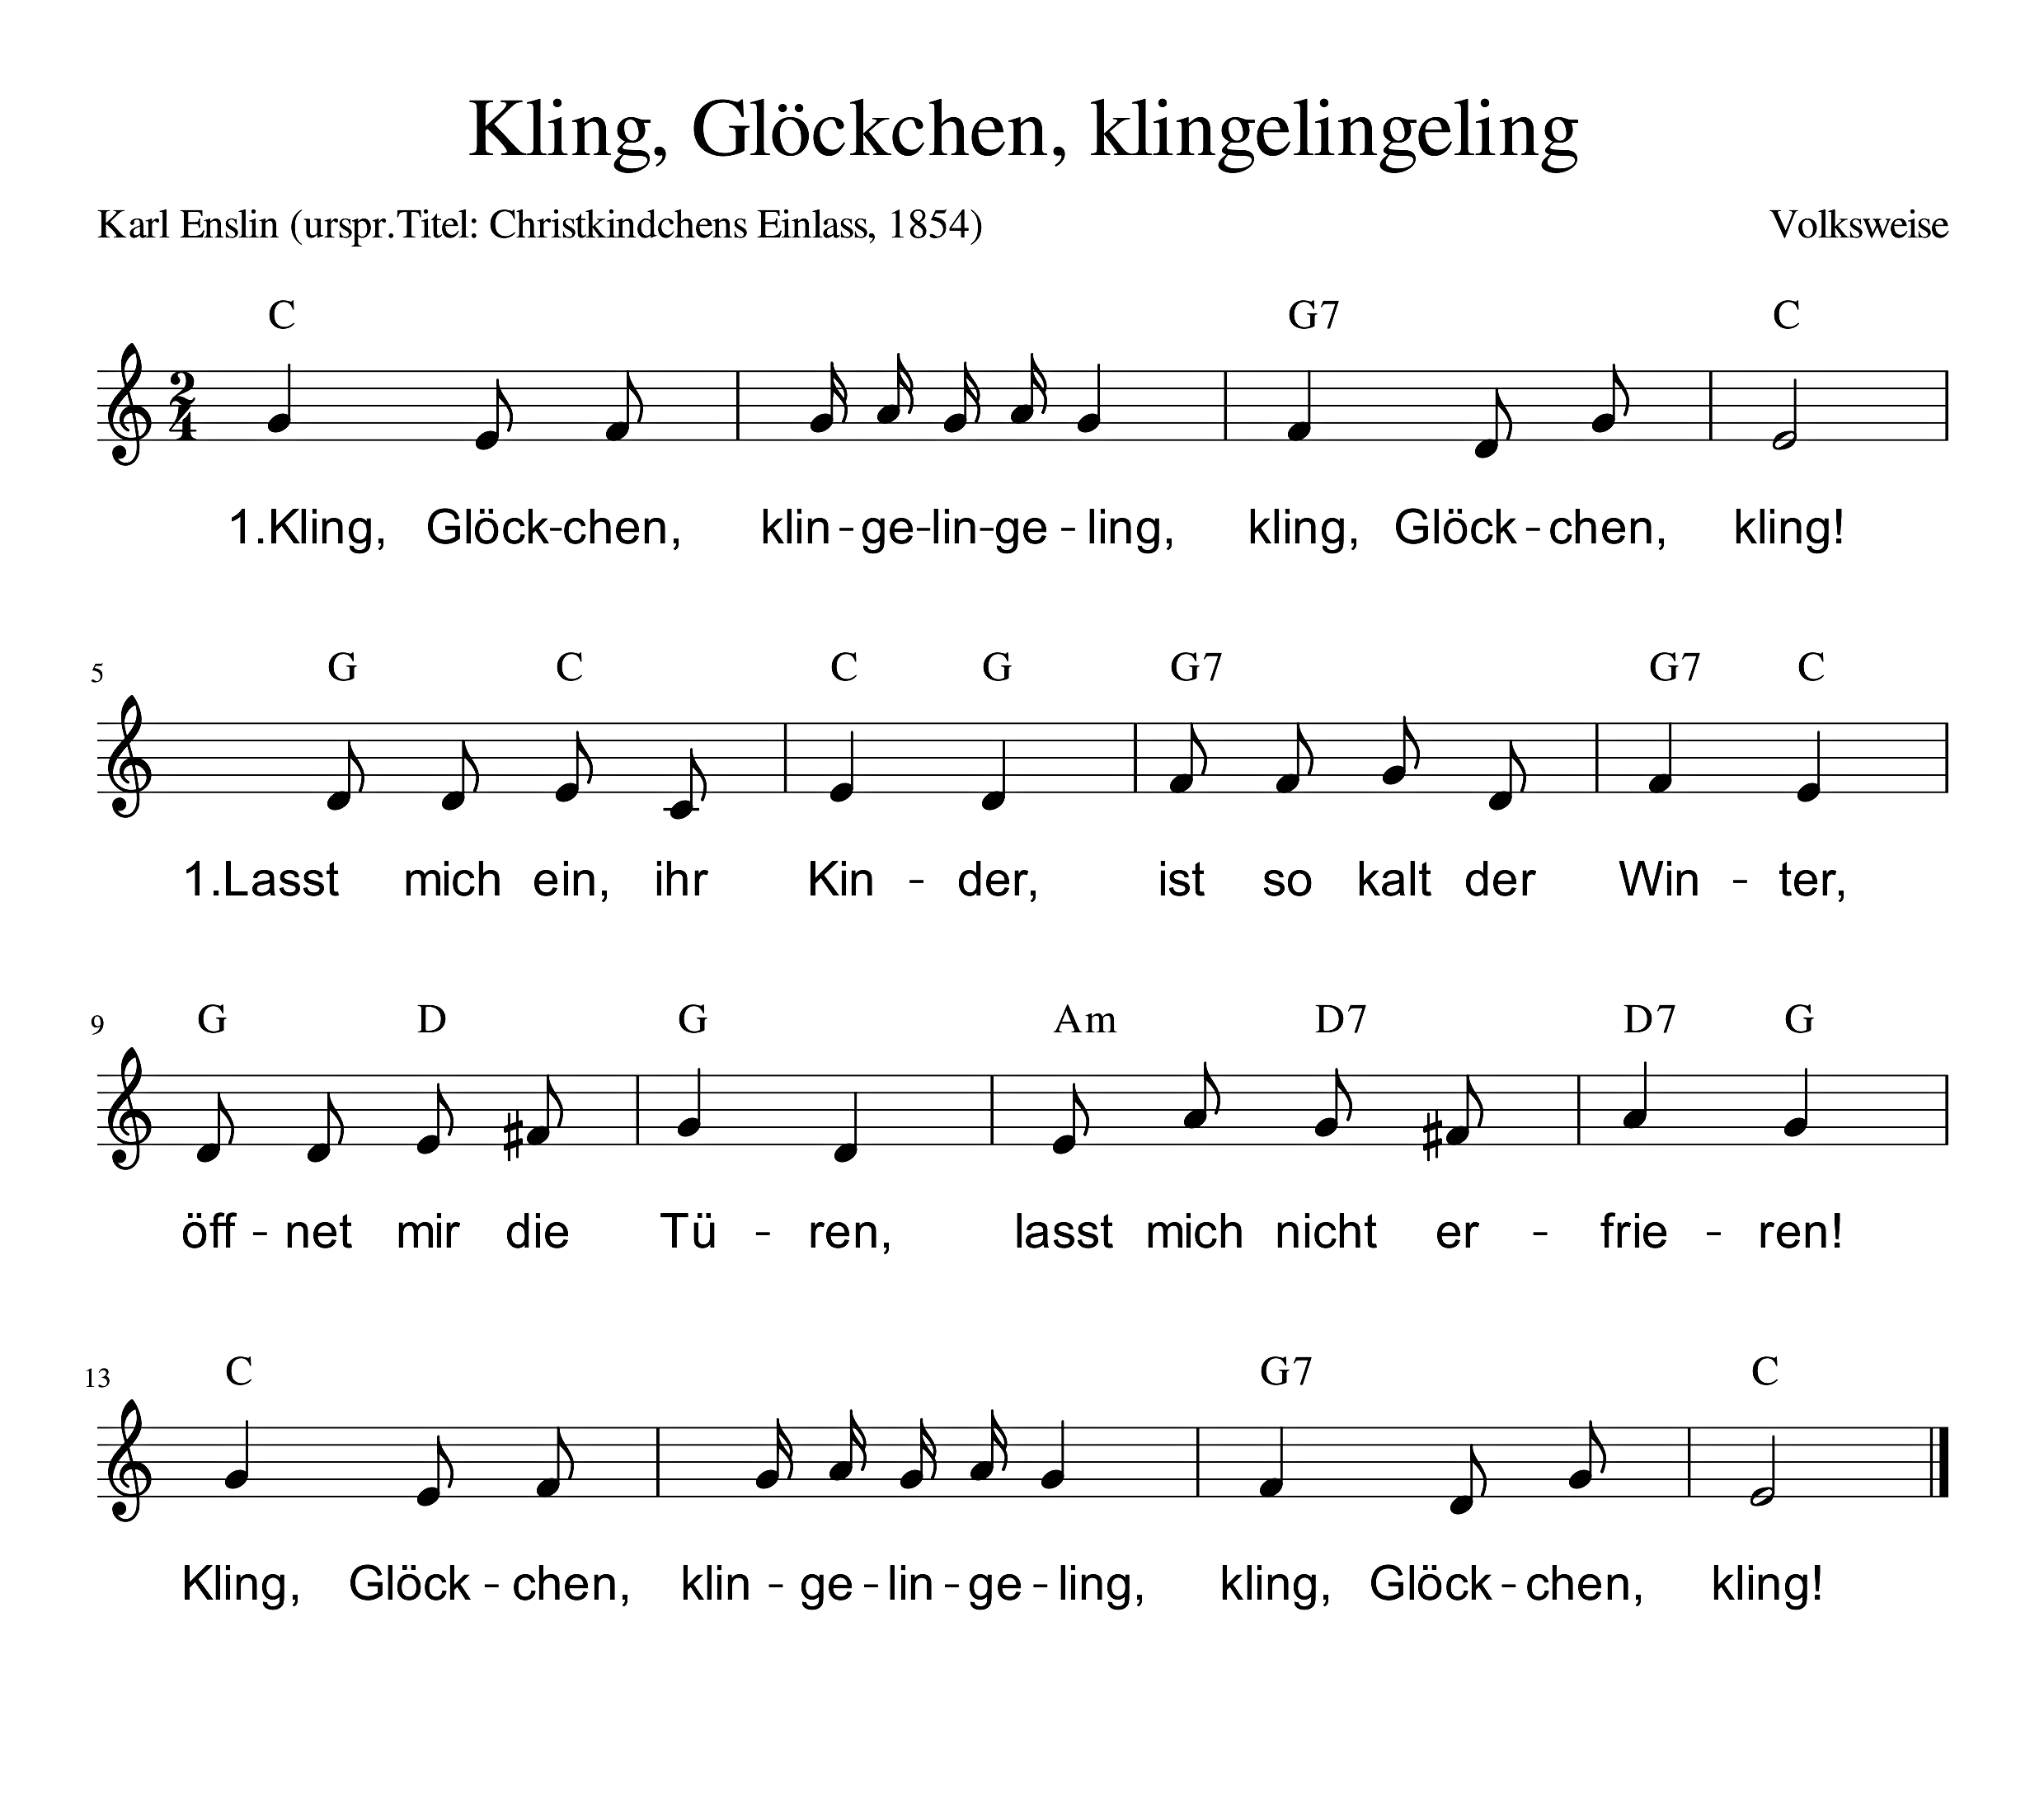 Deutschland-Lese | Kling, Glöckchen, Klingeling in Kling Glöckchen Klingelingeling Text